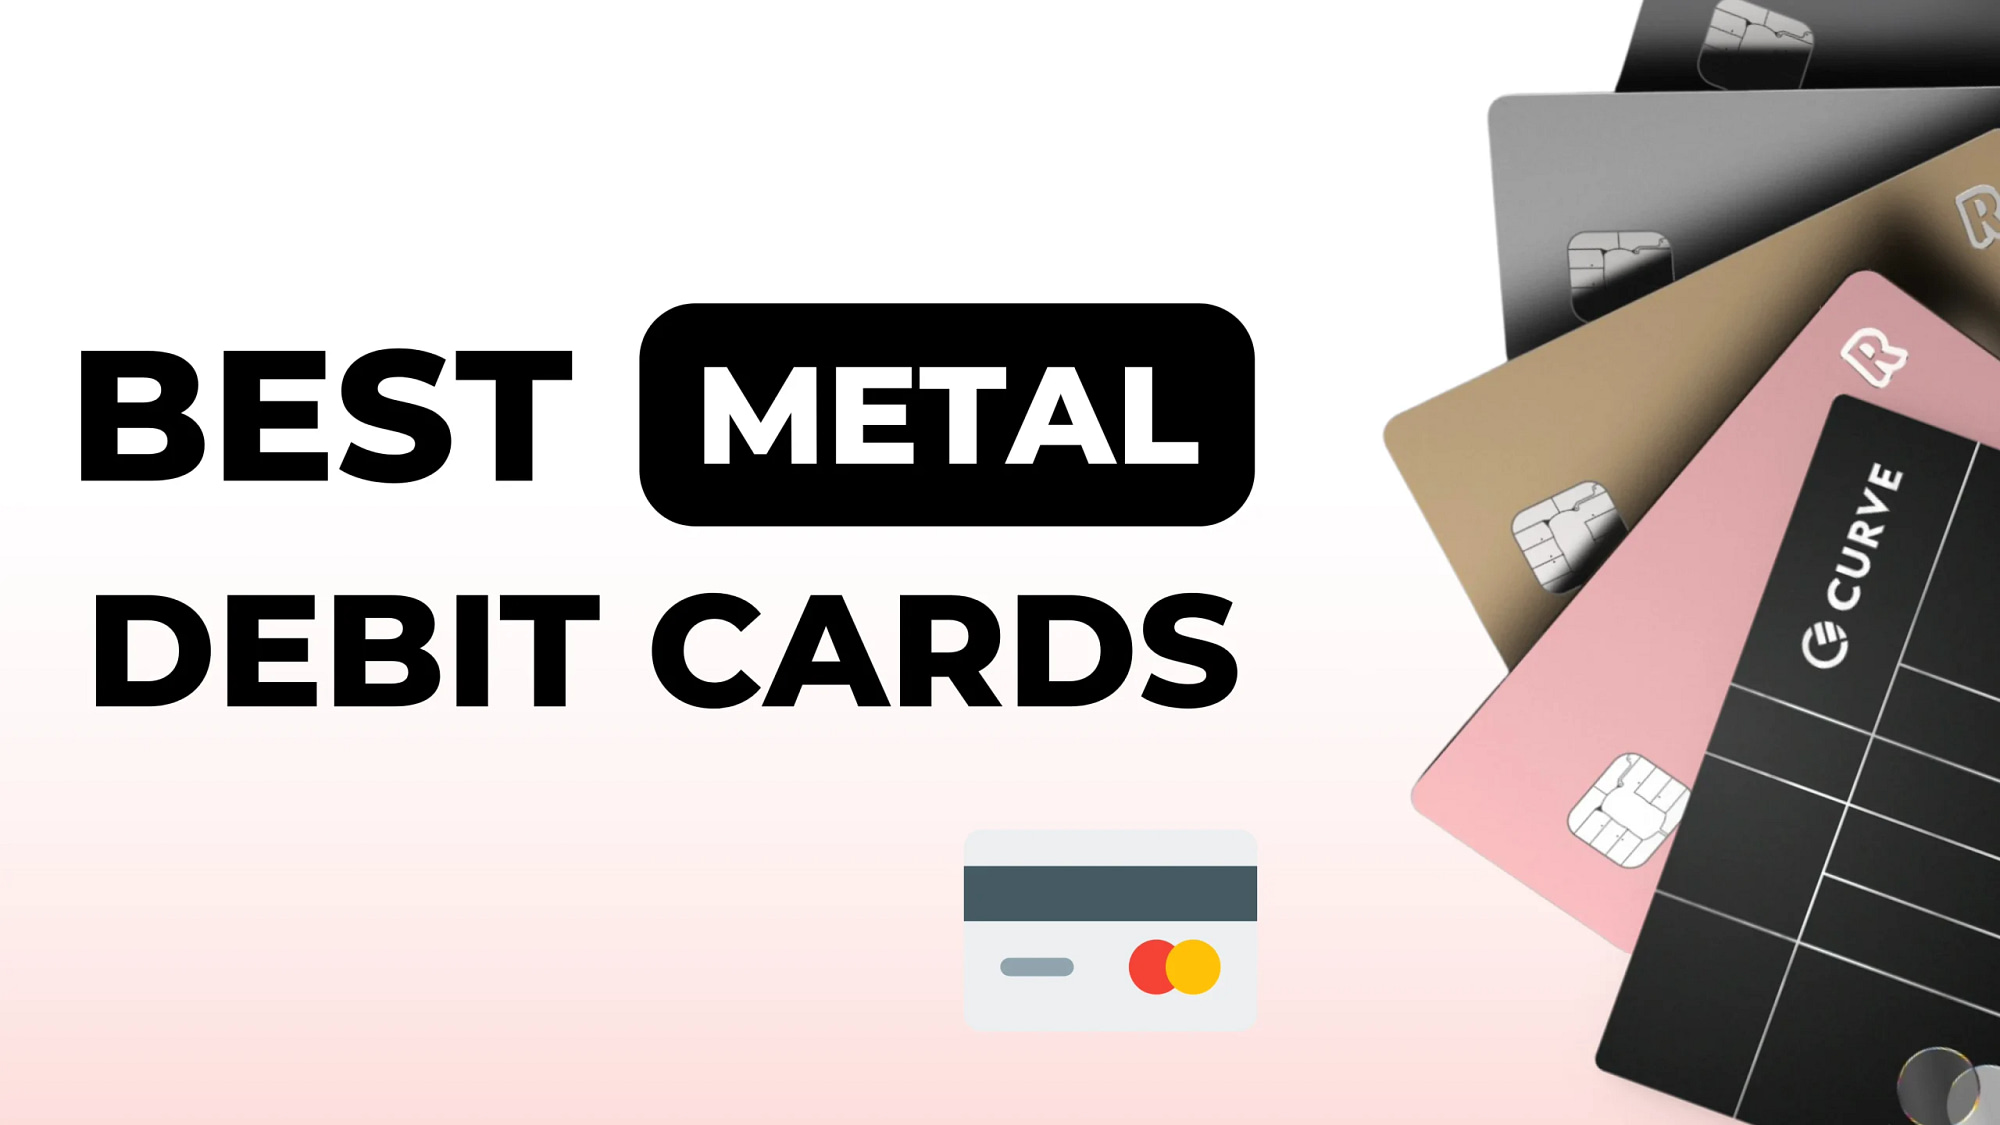 Best Metal Debit Cards